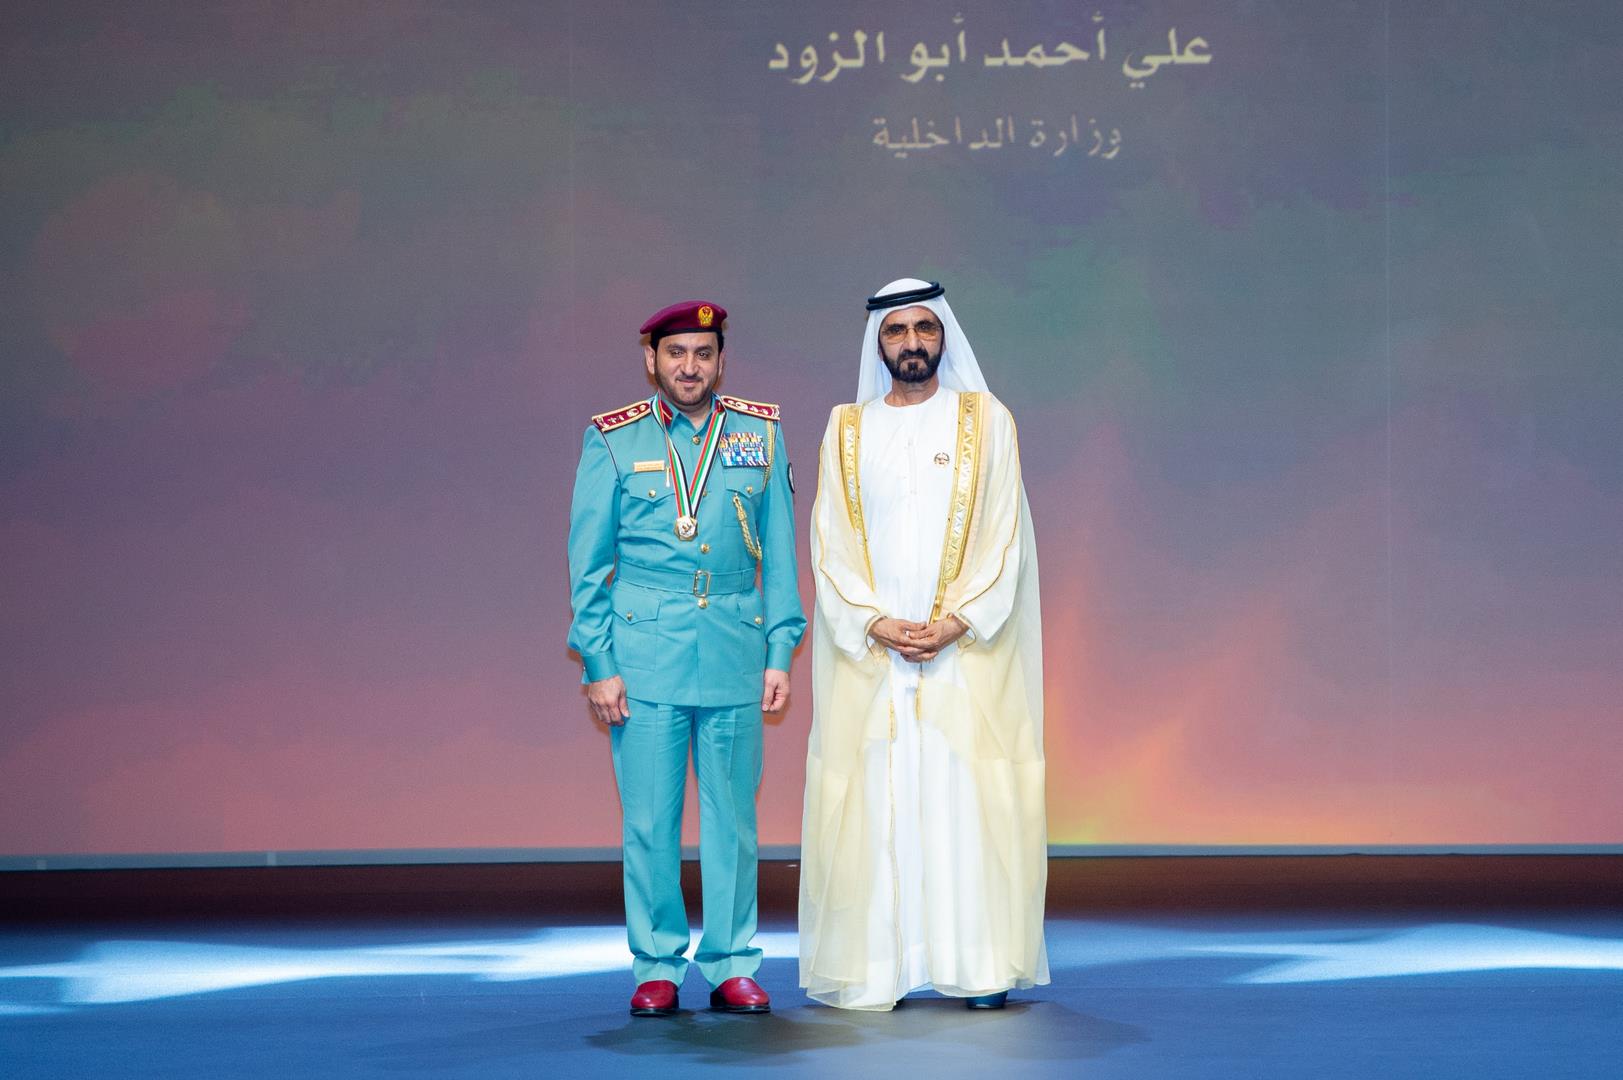  حفل جائزة محمد بن راشد للأداء الحكومي المتميز 2019